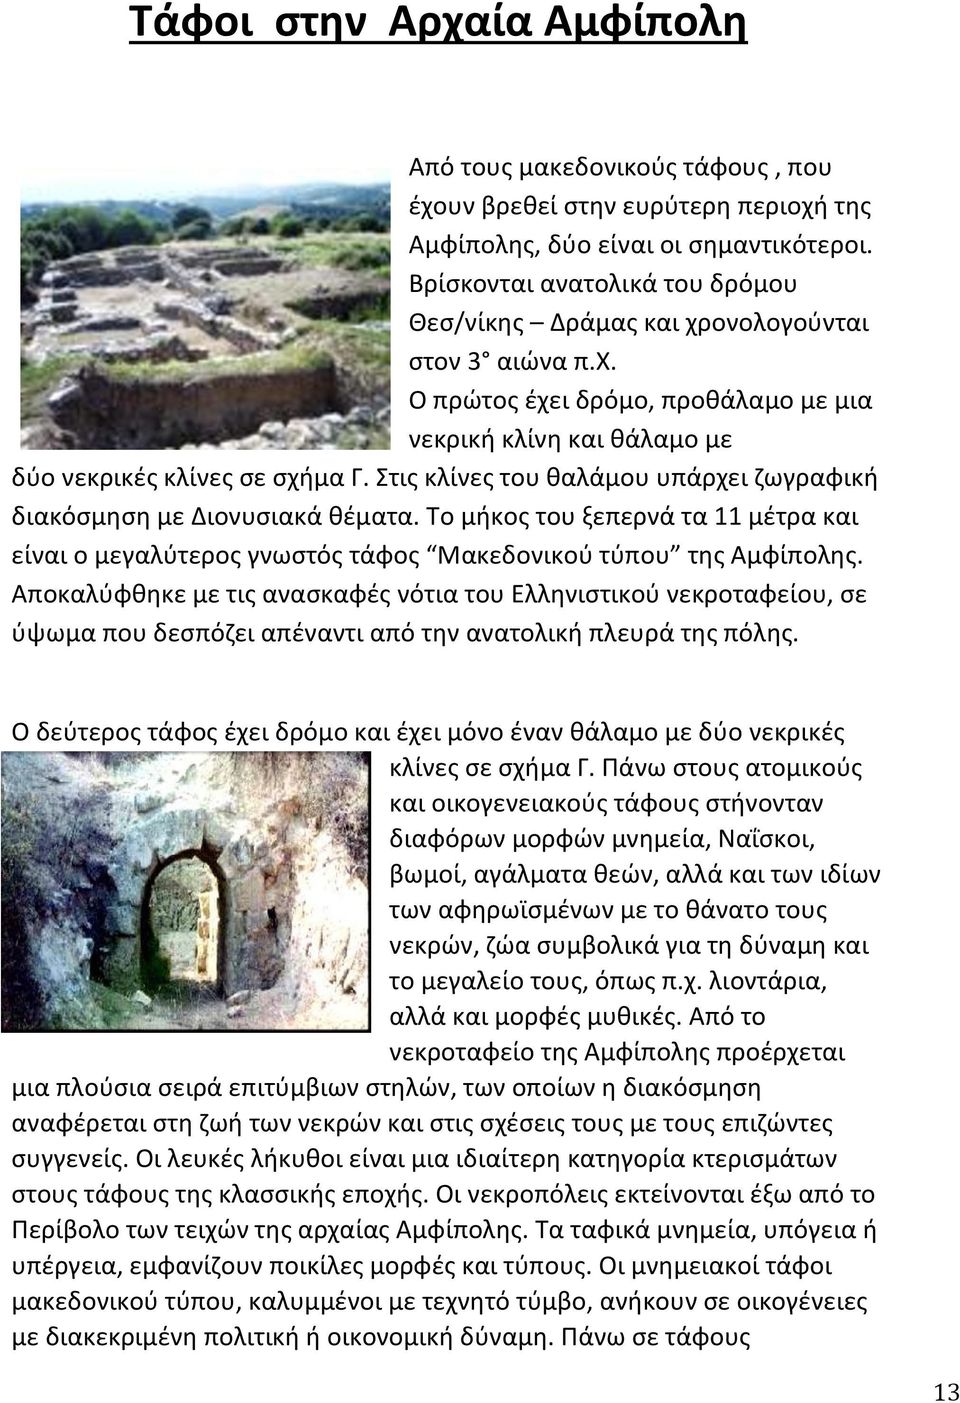 Στις κλίνες του θαλάμου υπάρχει ζωγραφική διακόσμηση με Διονυσιακά θέματα. Το μήκος του ξεπερνά τα 11 μέτρα και είναι ο μεγαλύτερος γνωστός τάφος Μακεδονικού τύπου της Αμφίπολης.